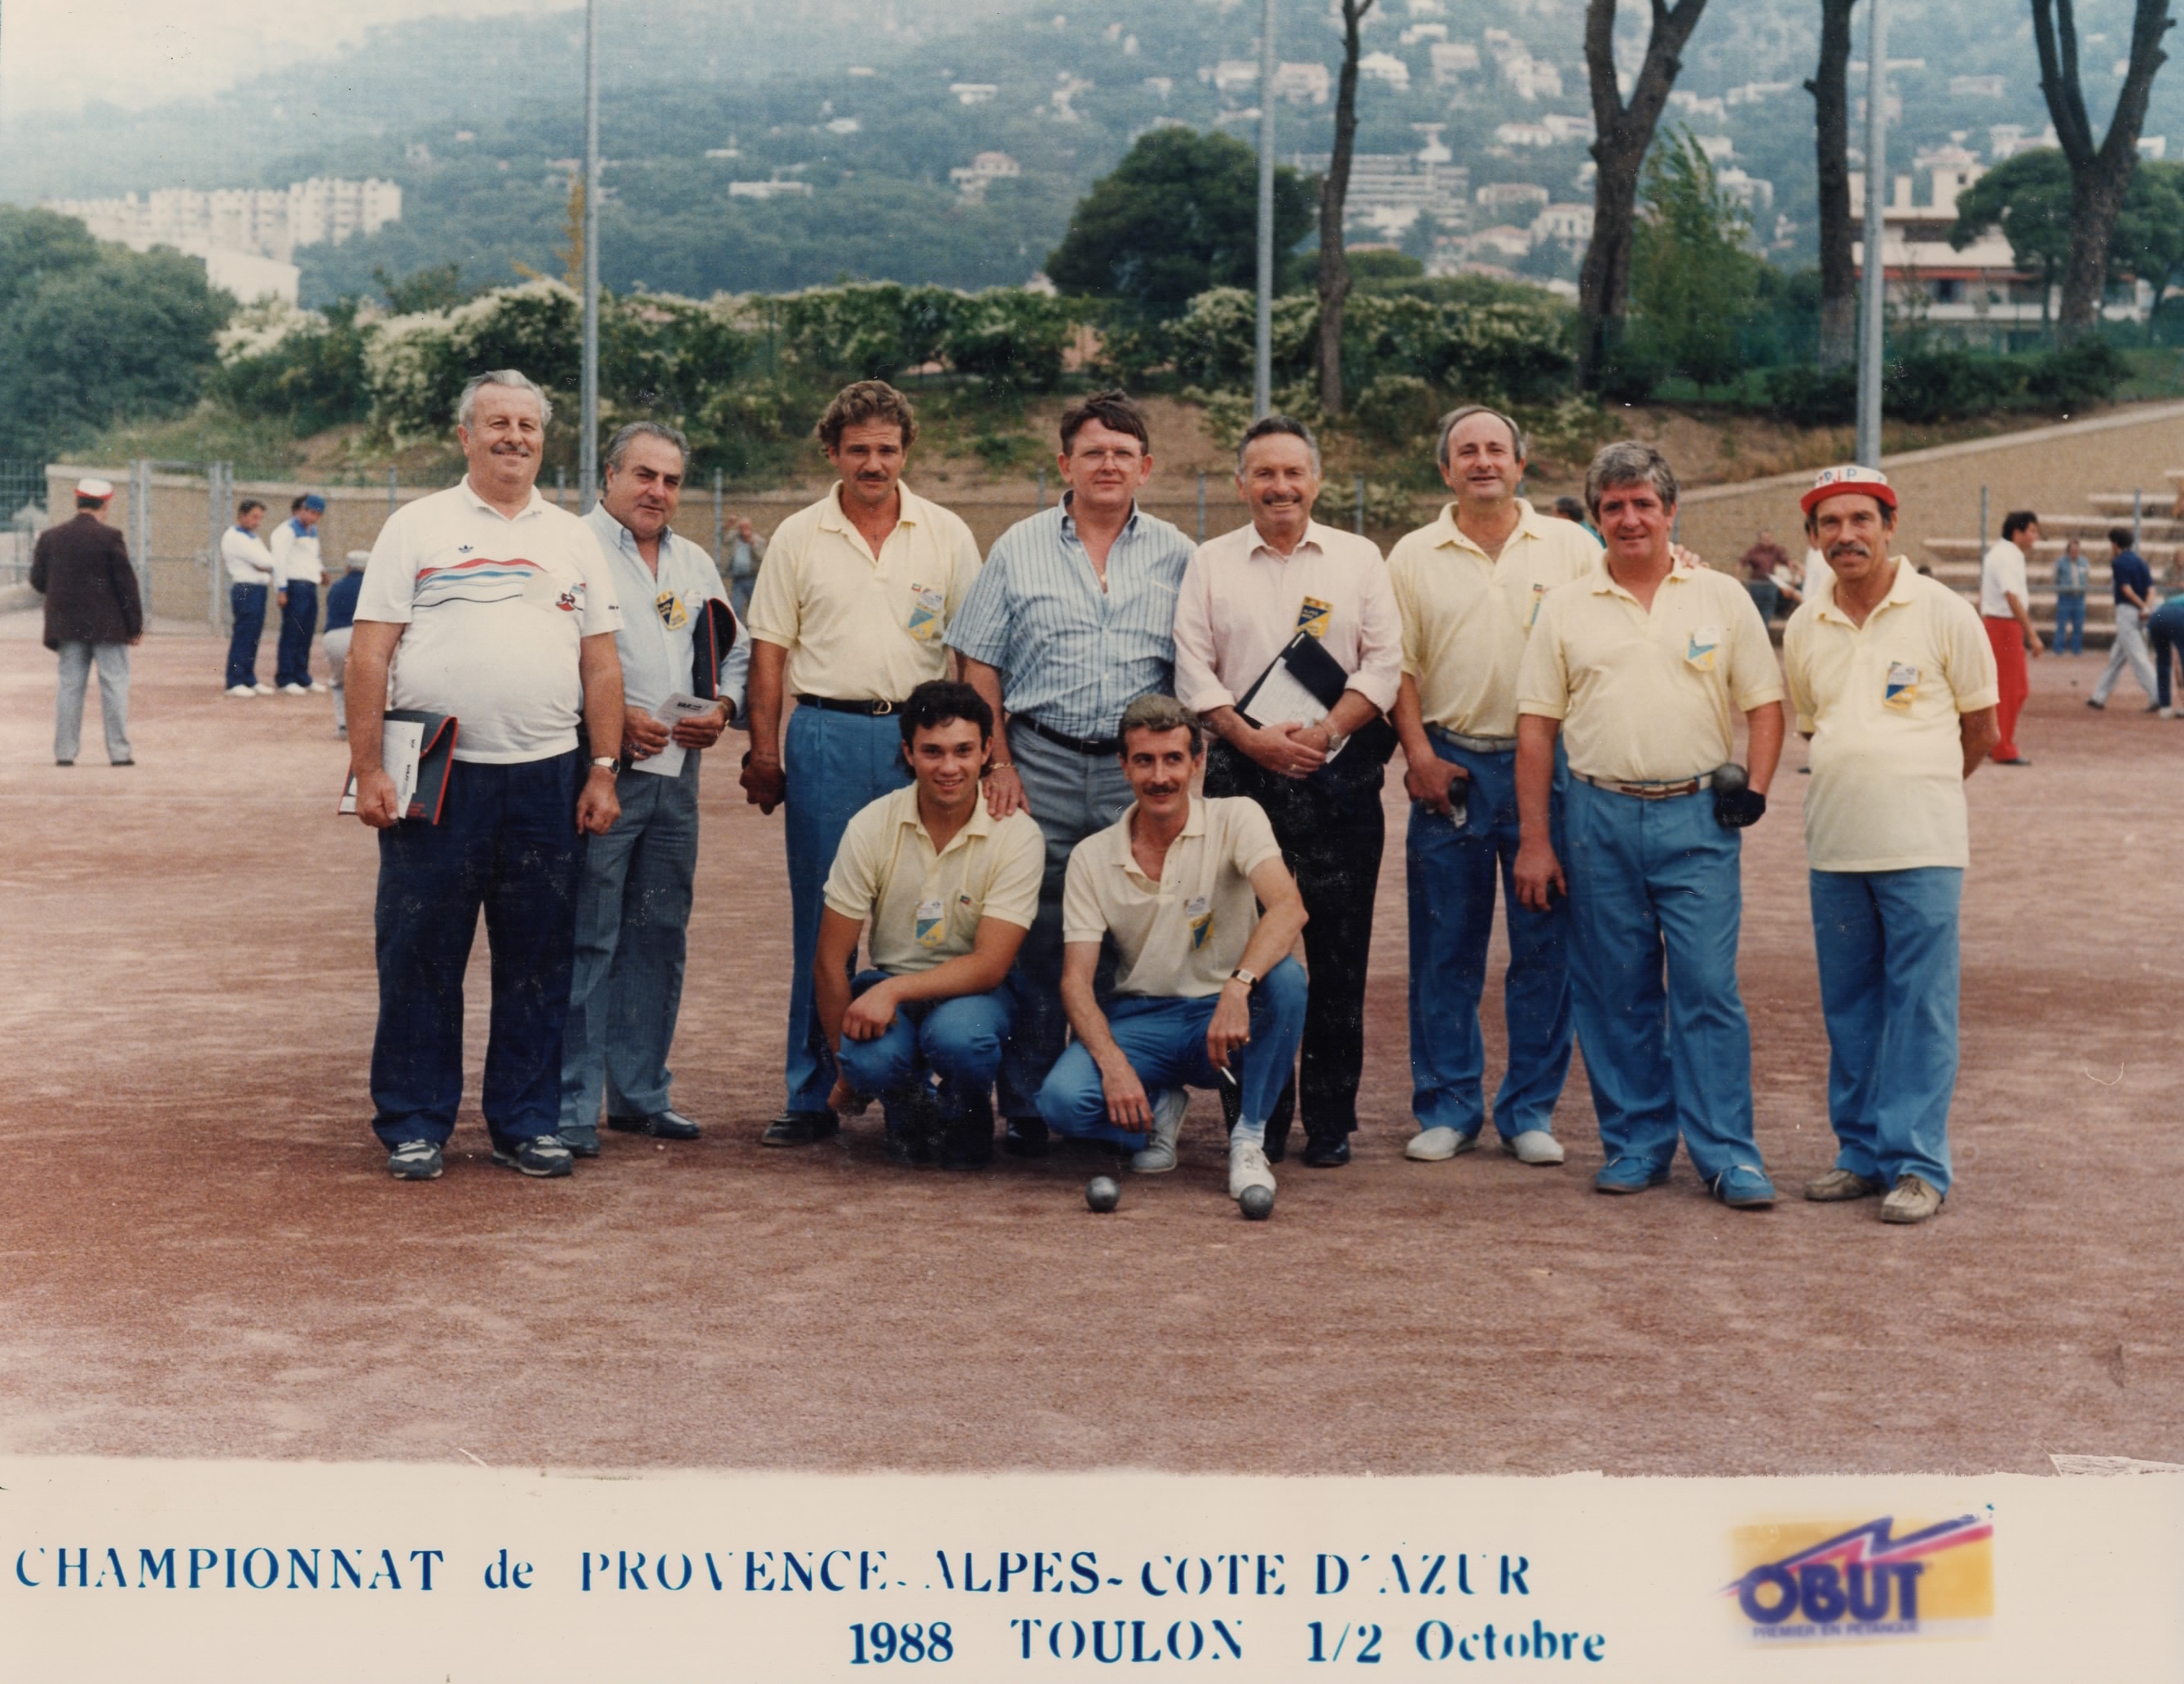 Les qualifiés de la Mini-Boule Laurentine au championnat de ligue 1988 (photo Jean-Claude MEYER)